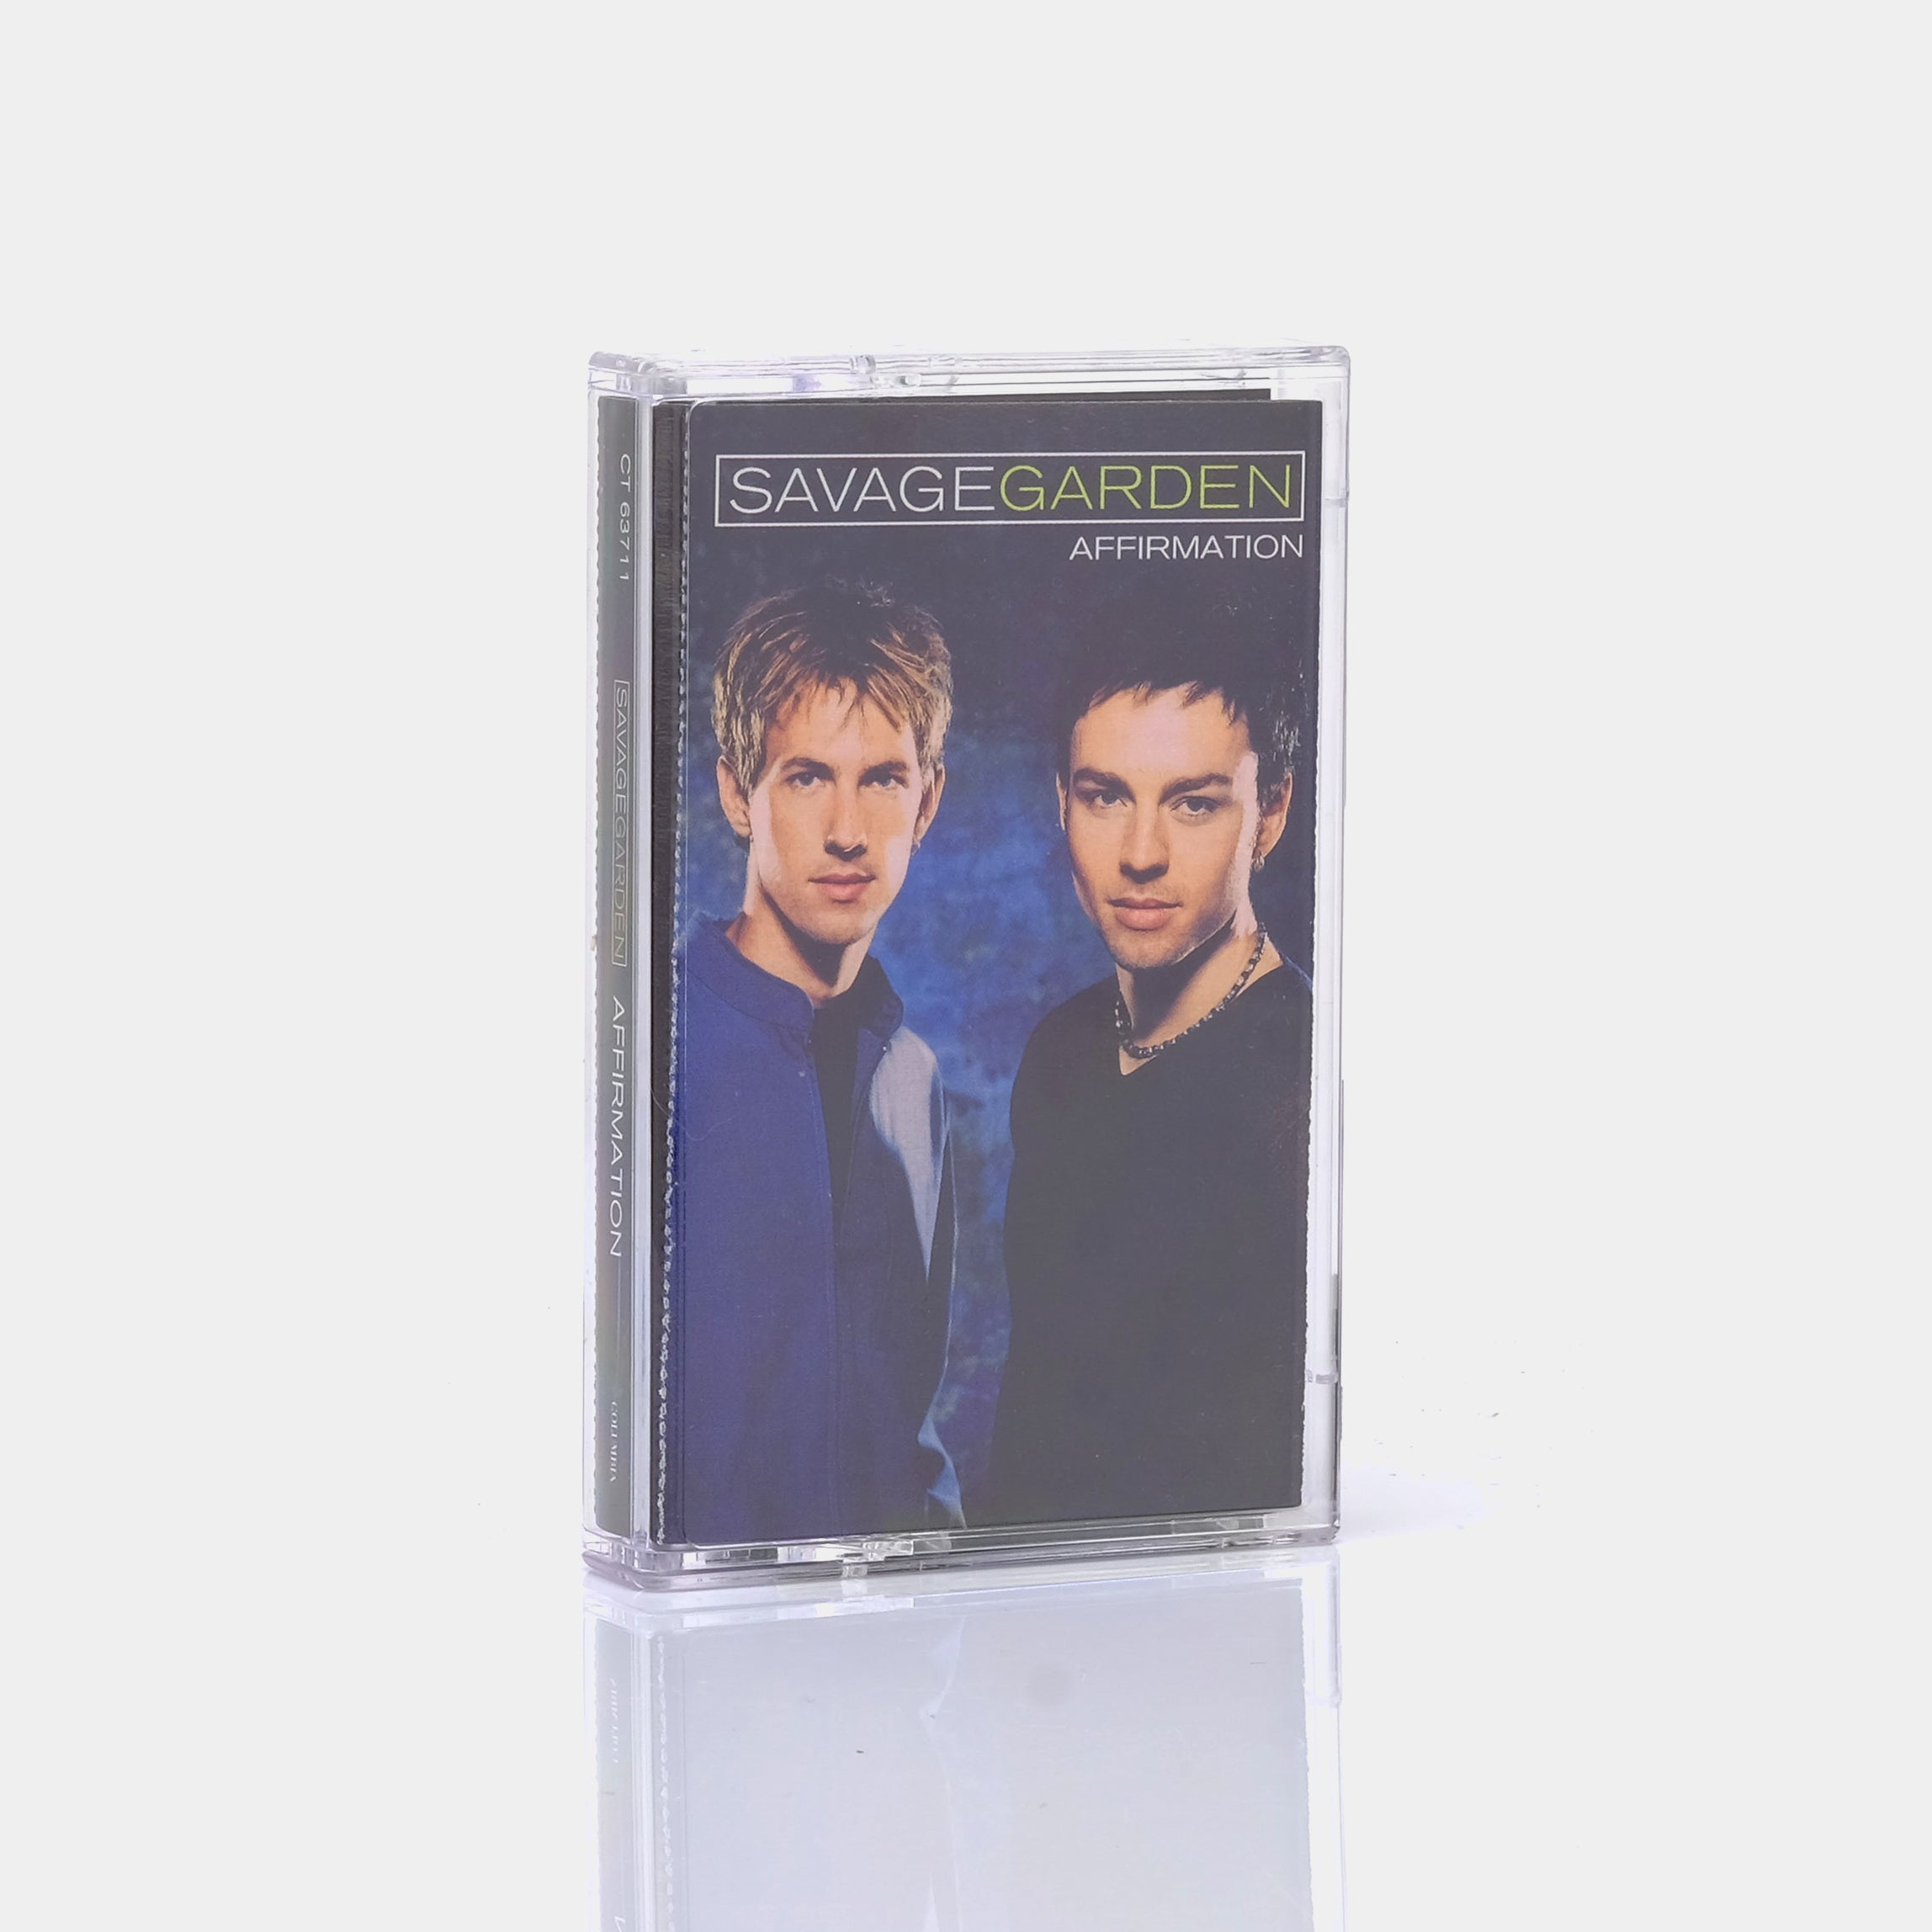 Savage Garden - Affirmation Cassette Tape